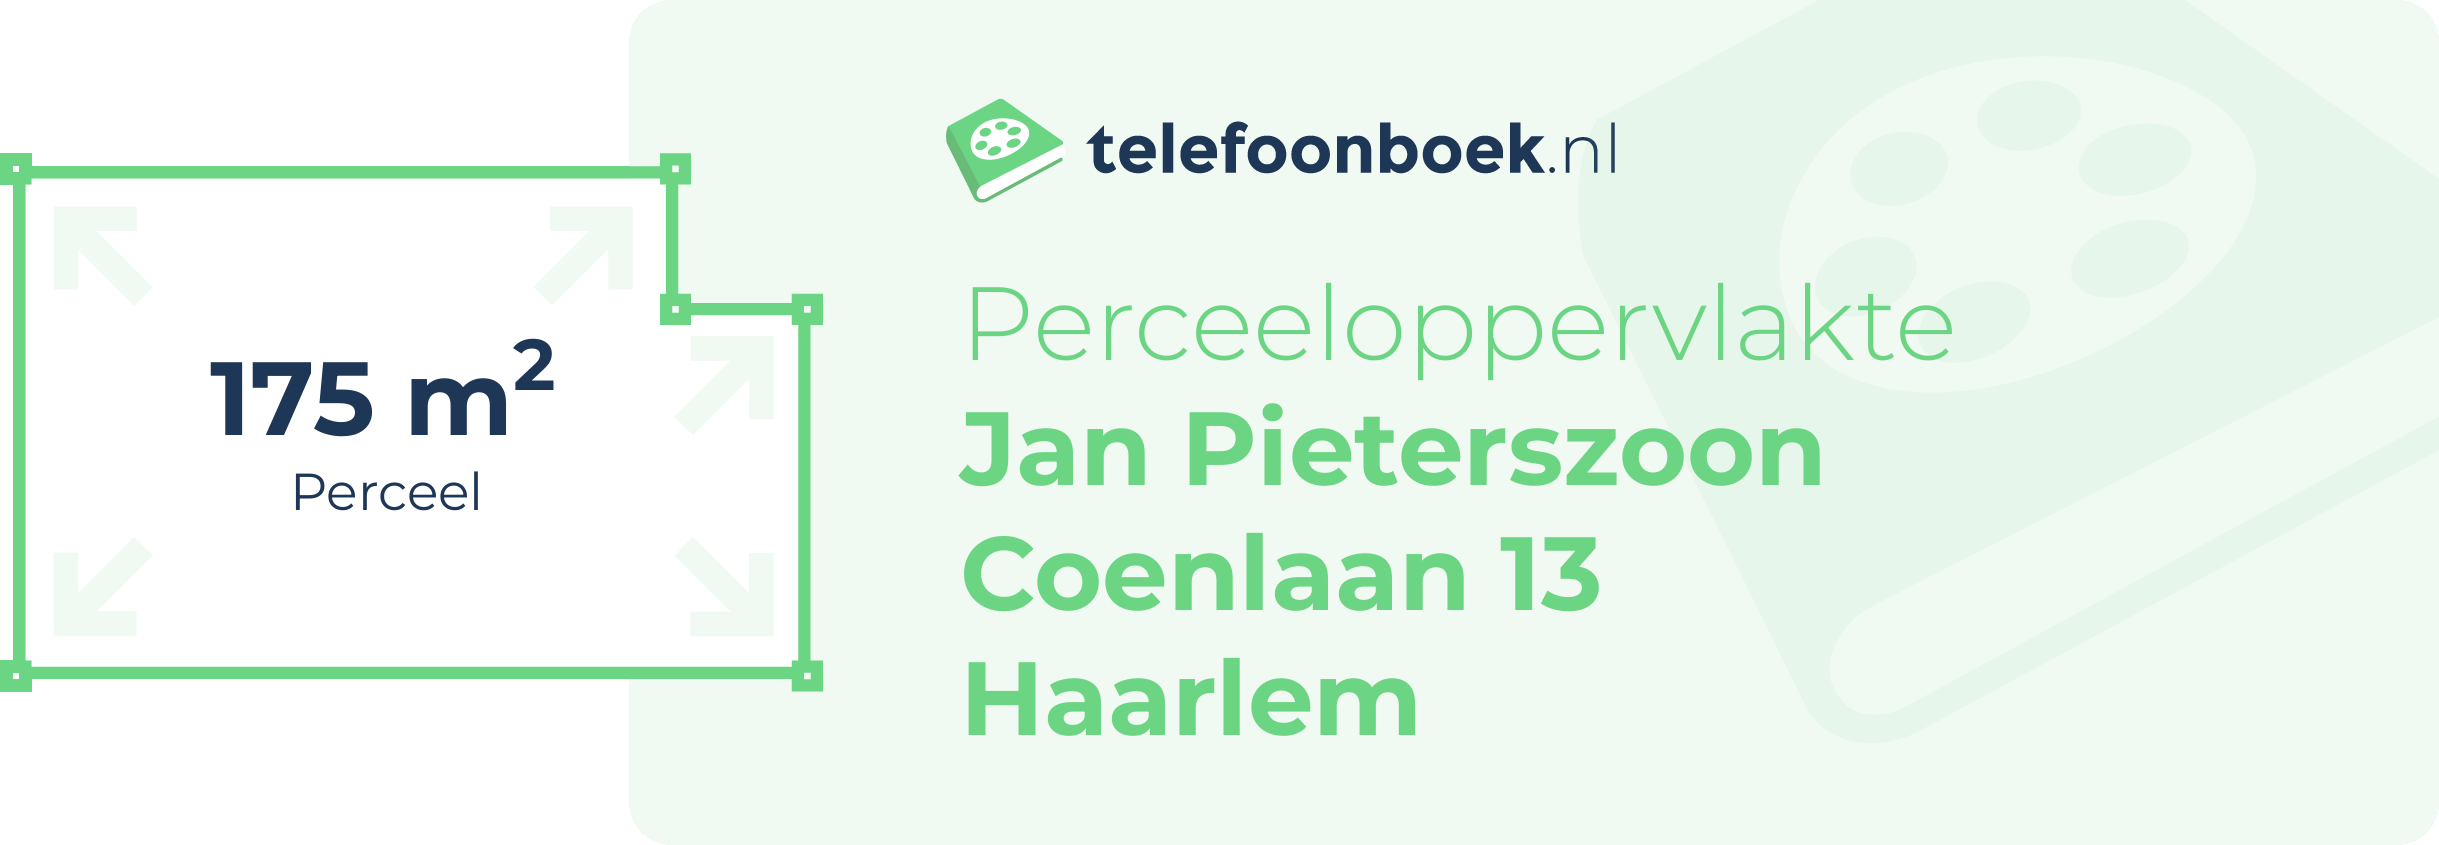 Perceeloppervlakte Jan Pieterszoon Coenlaan 13 Haarlem